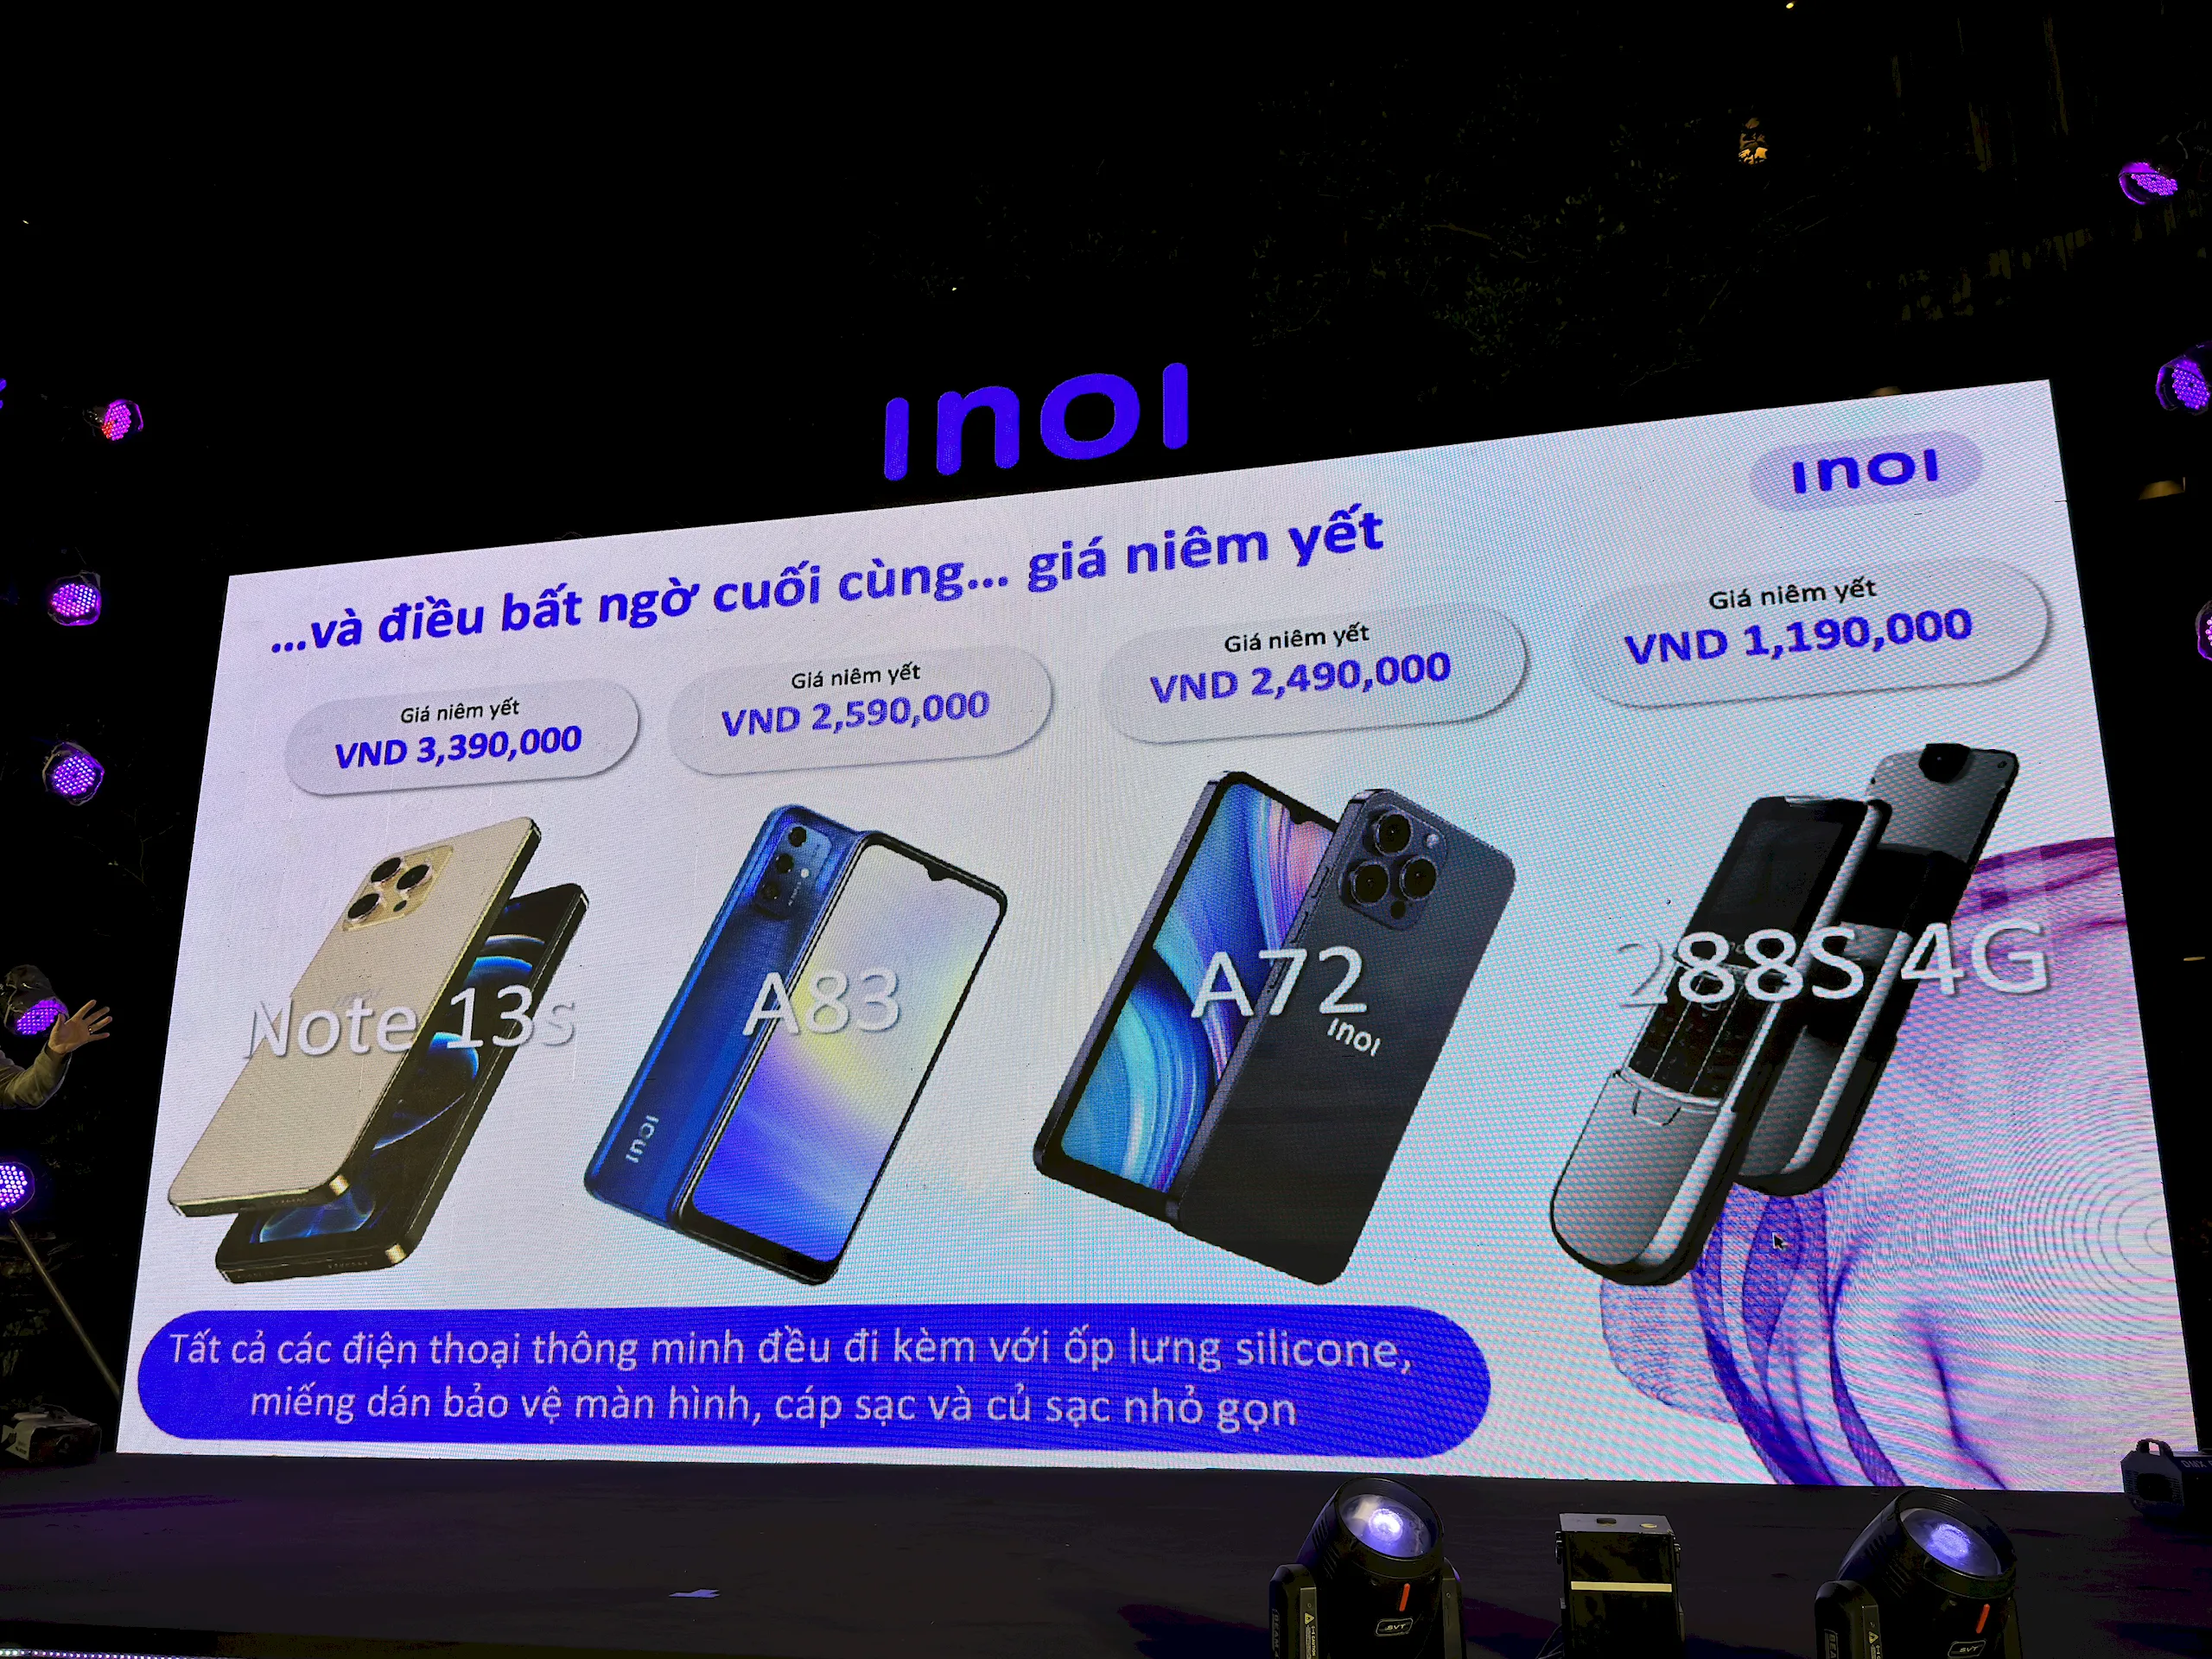 INOI hợp tác cùng PHTD mang điện thoại giá tốt đến với người tiêu dùng Việt